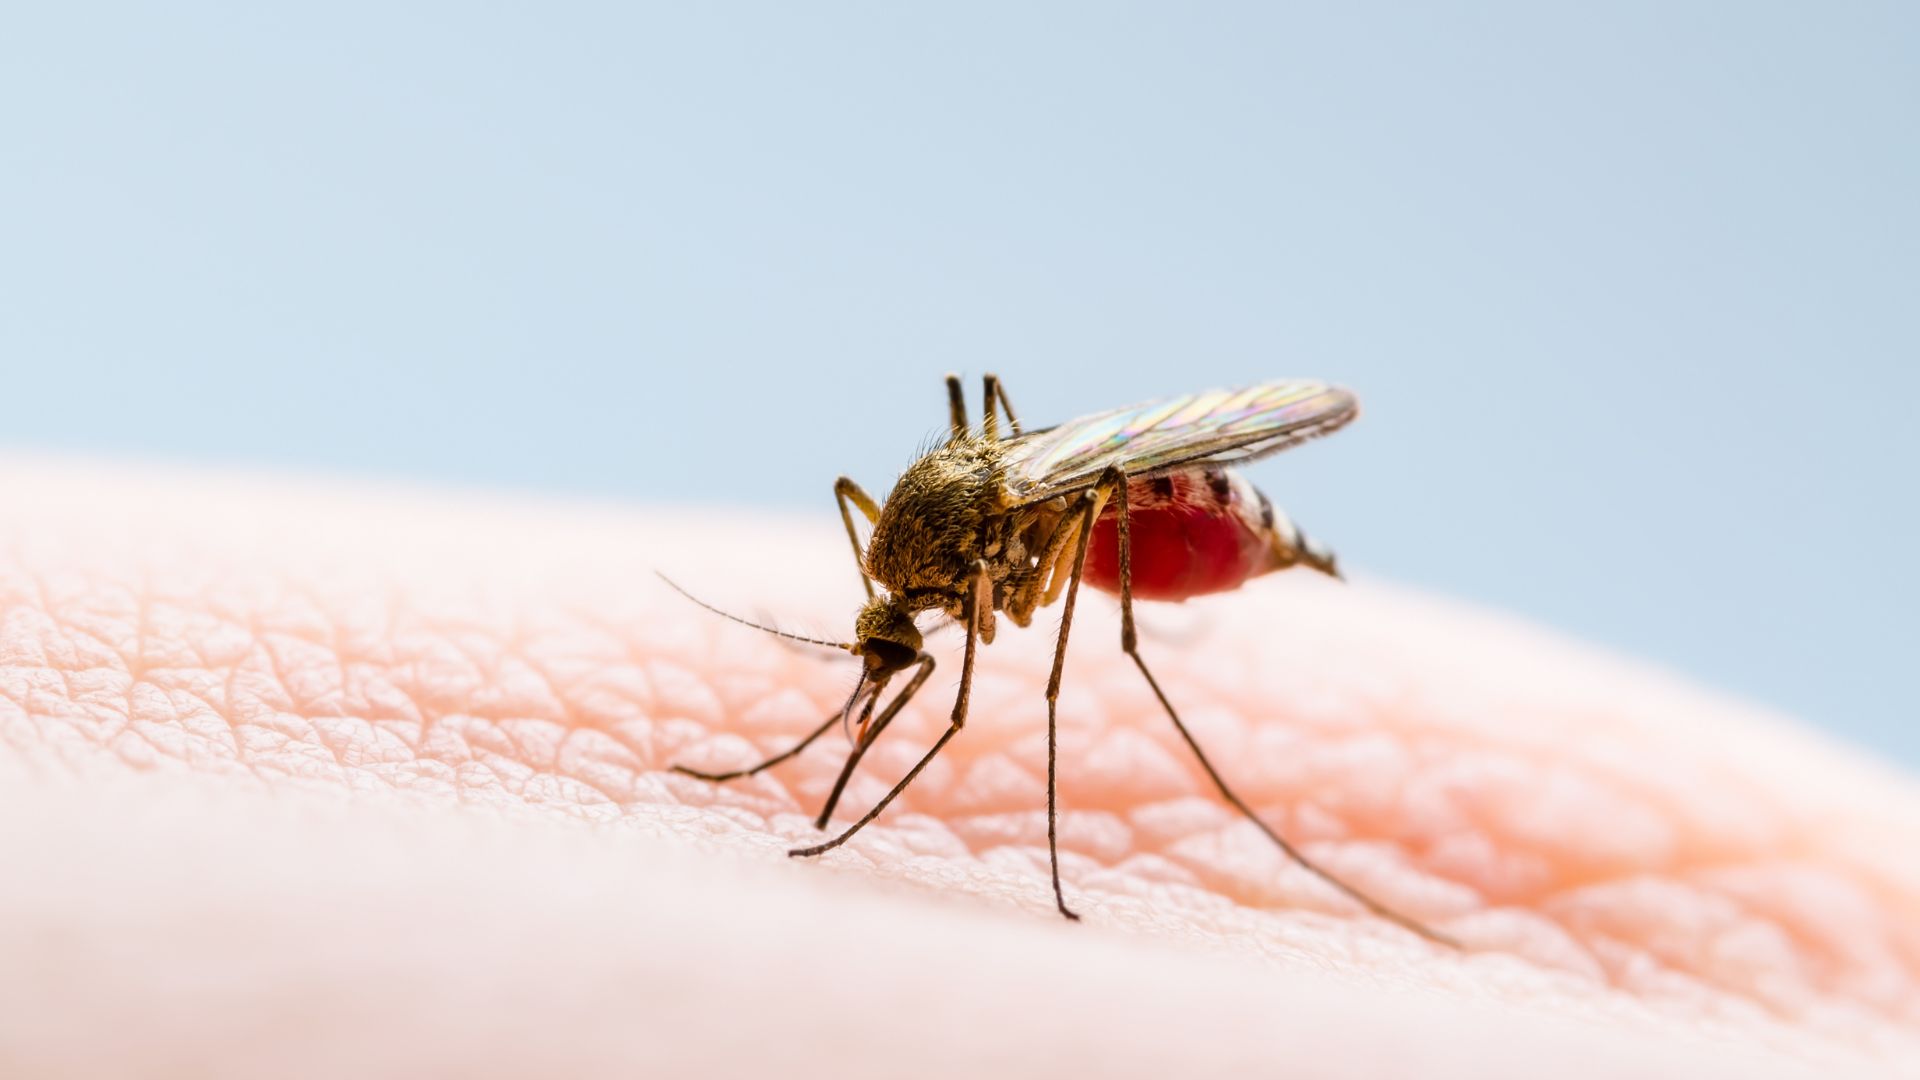 Moustiques : pourquoi certaines personnes se font-elles plus